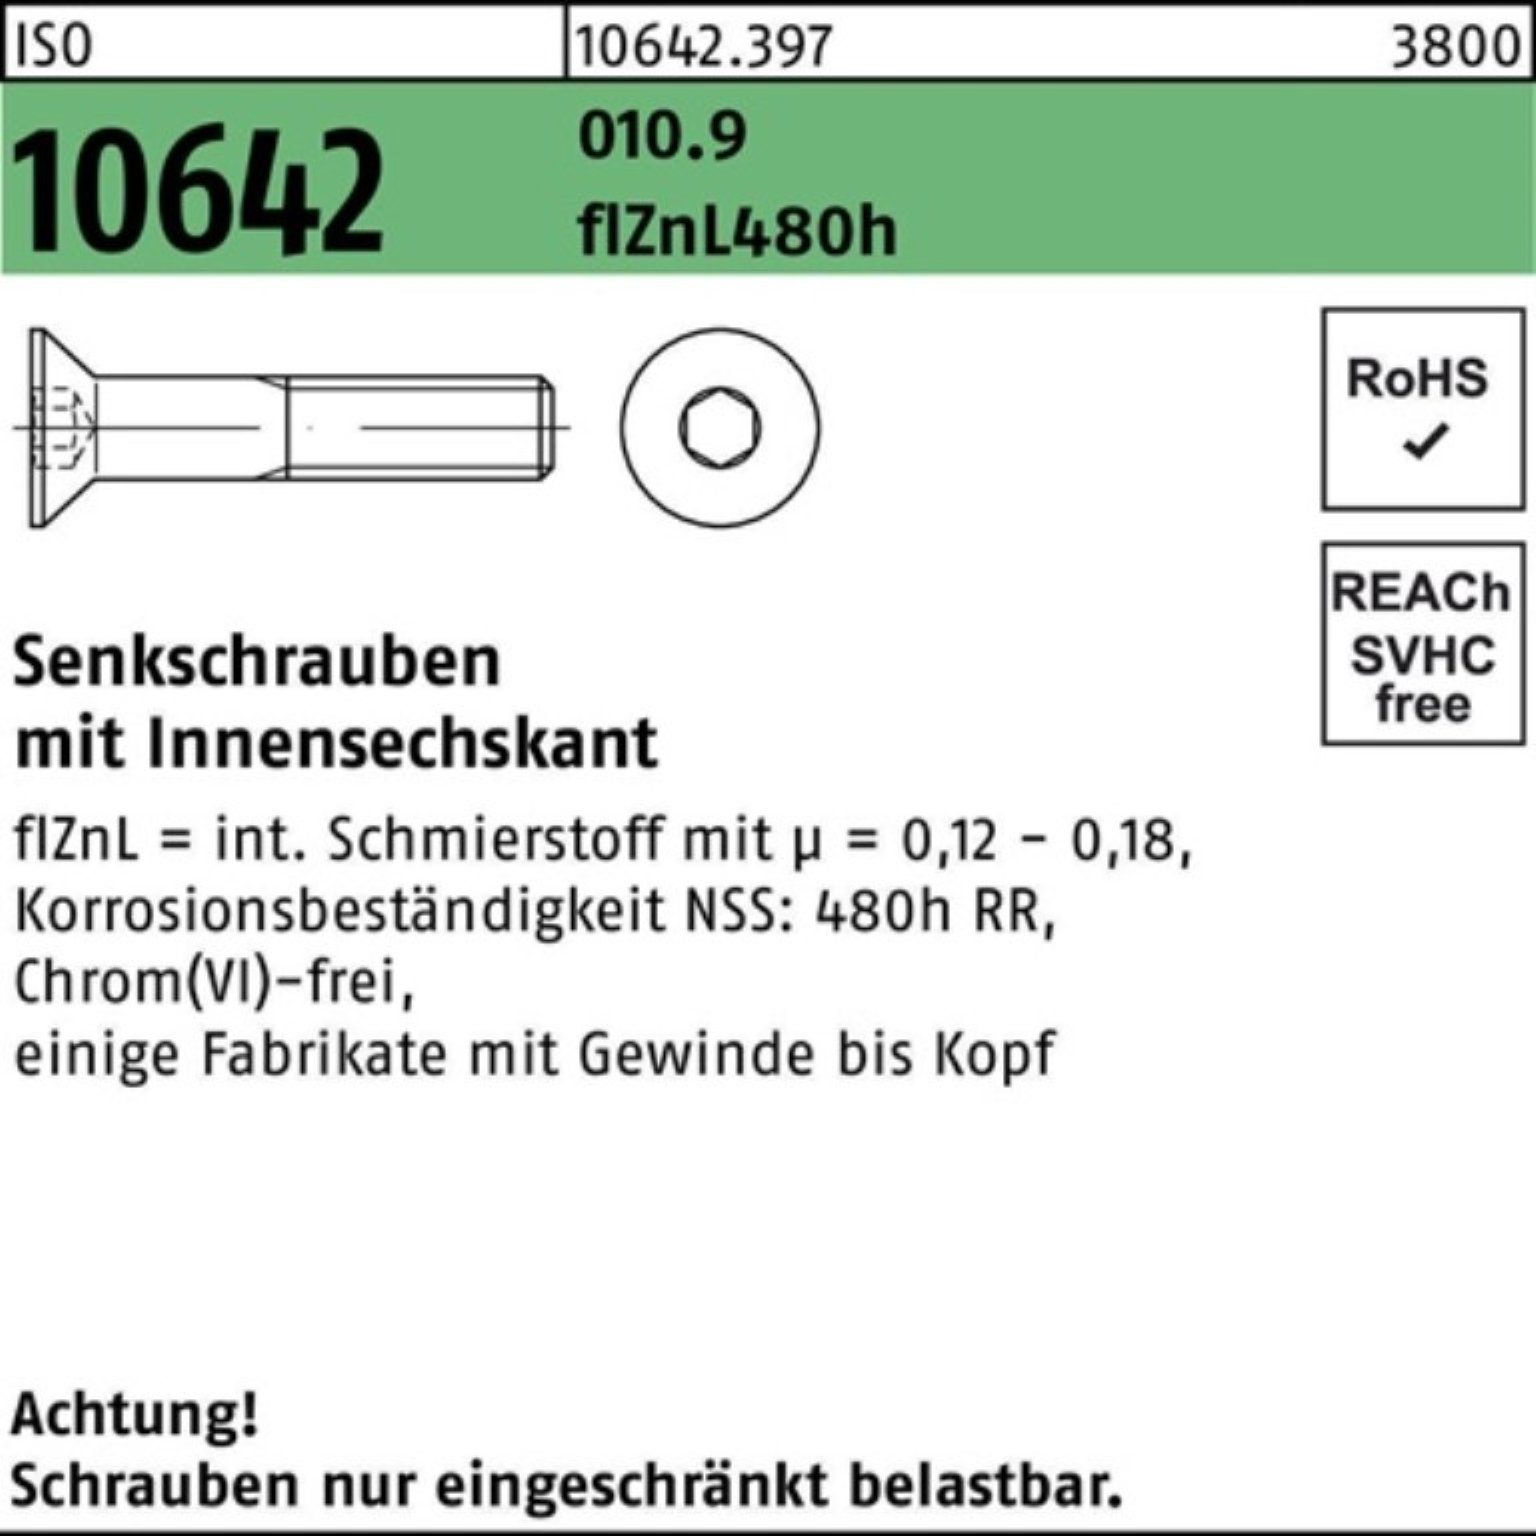 Reyher Senkschraube 100er Pack Senkschraube ISO 10642 Innen-6kt M12x40 010.9 flZnL 480h zi